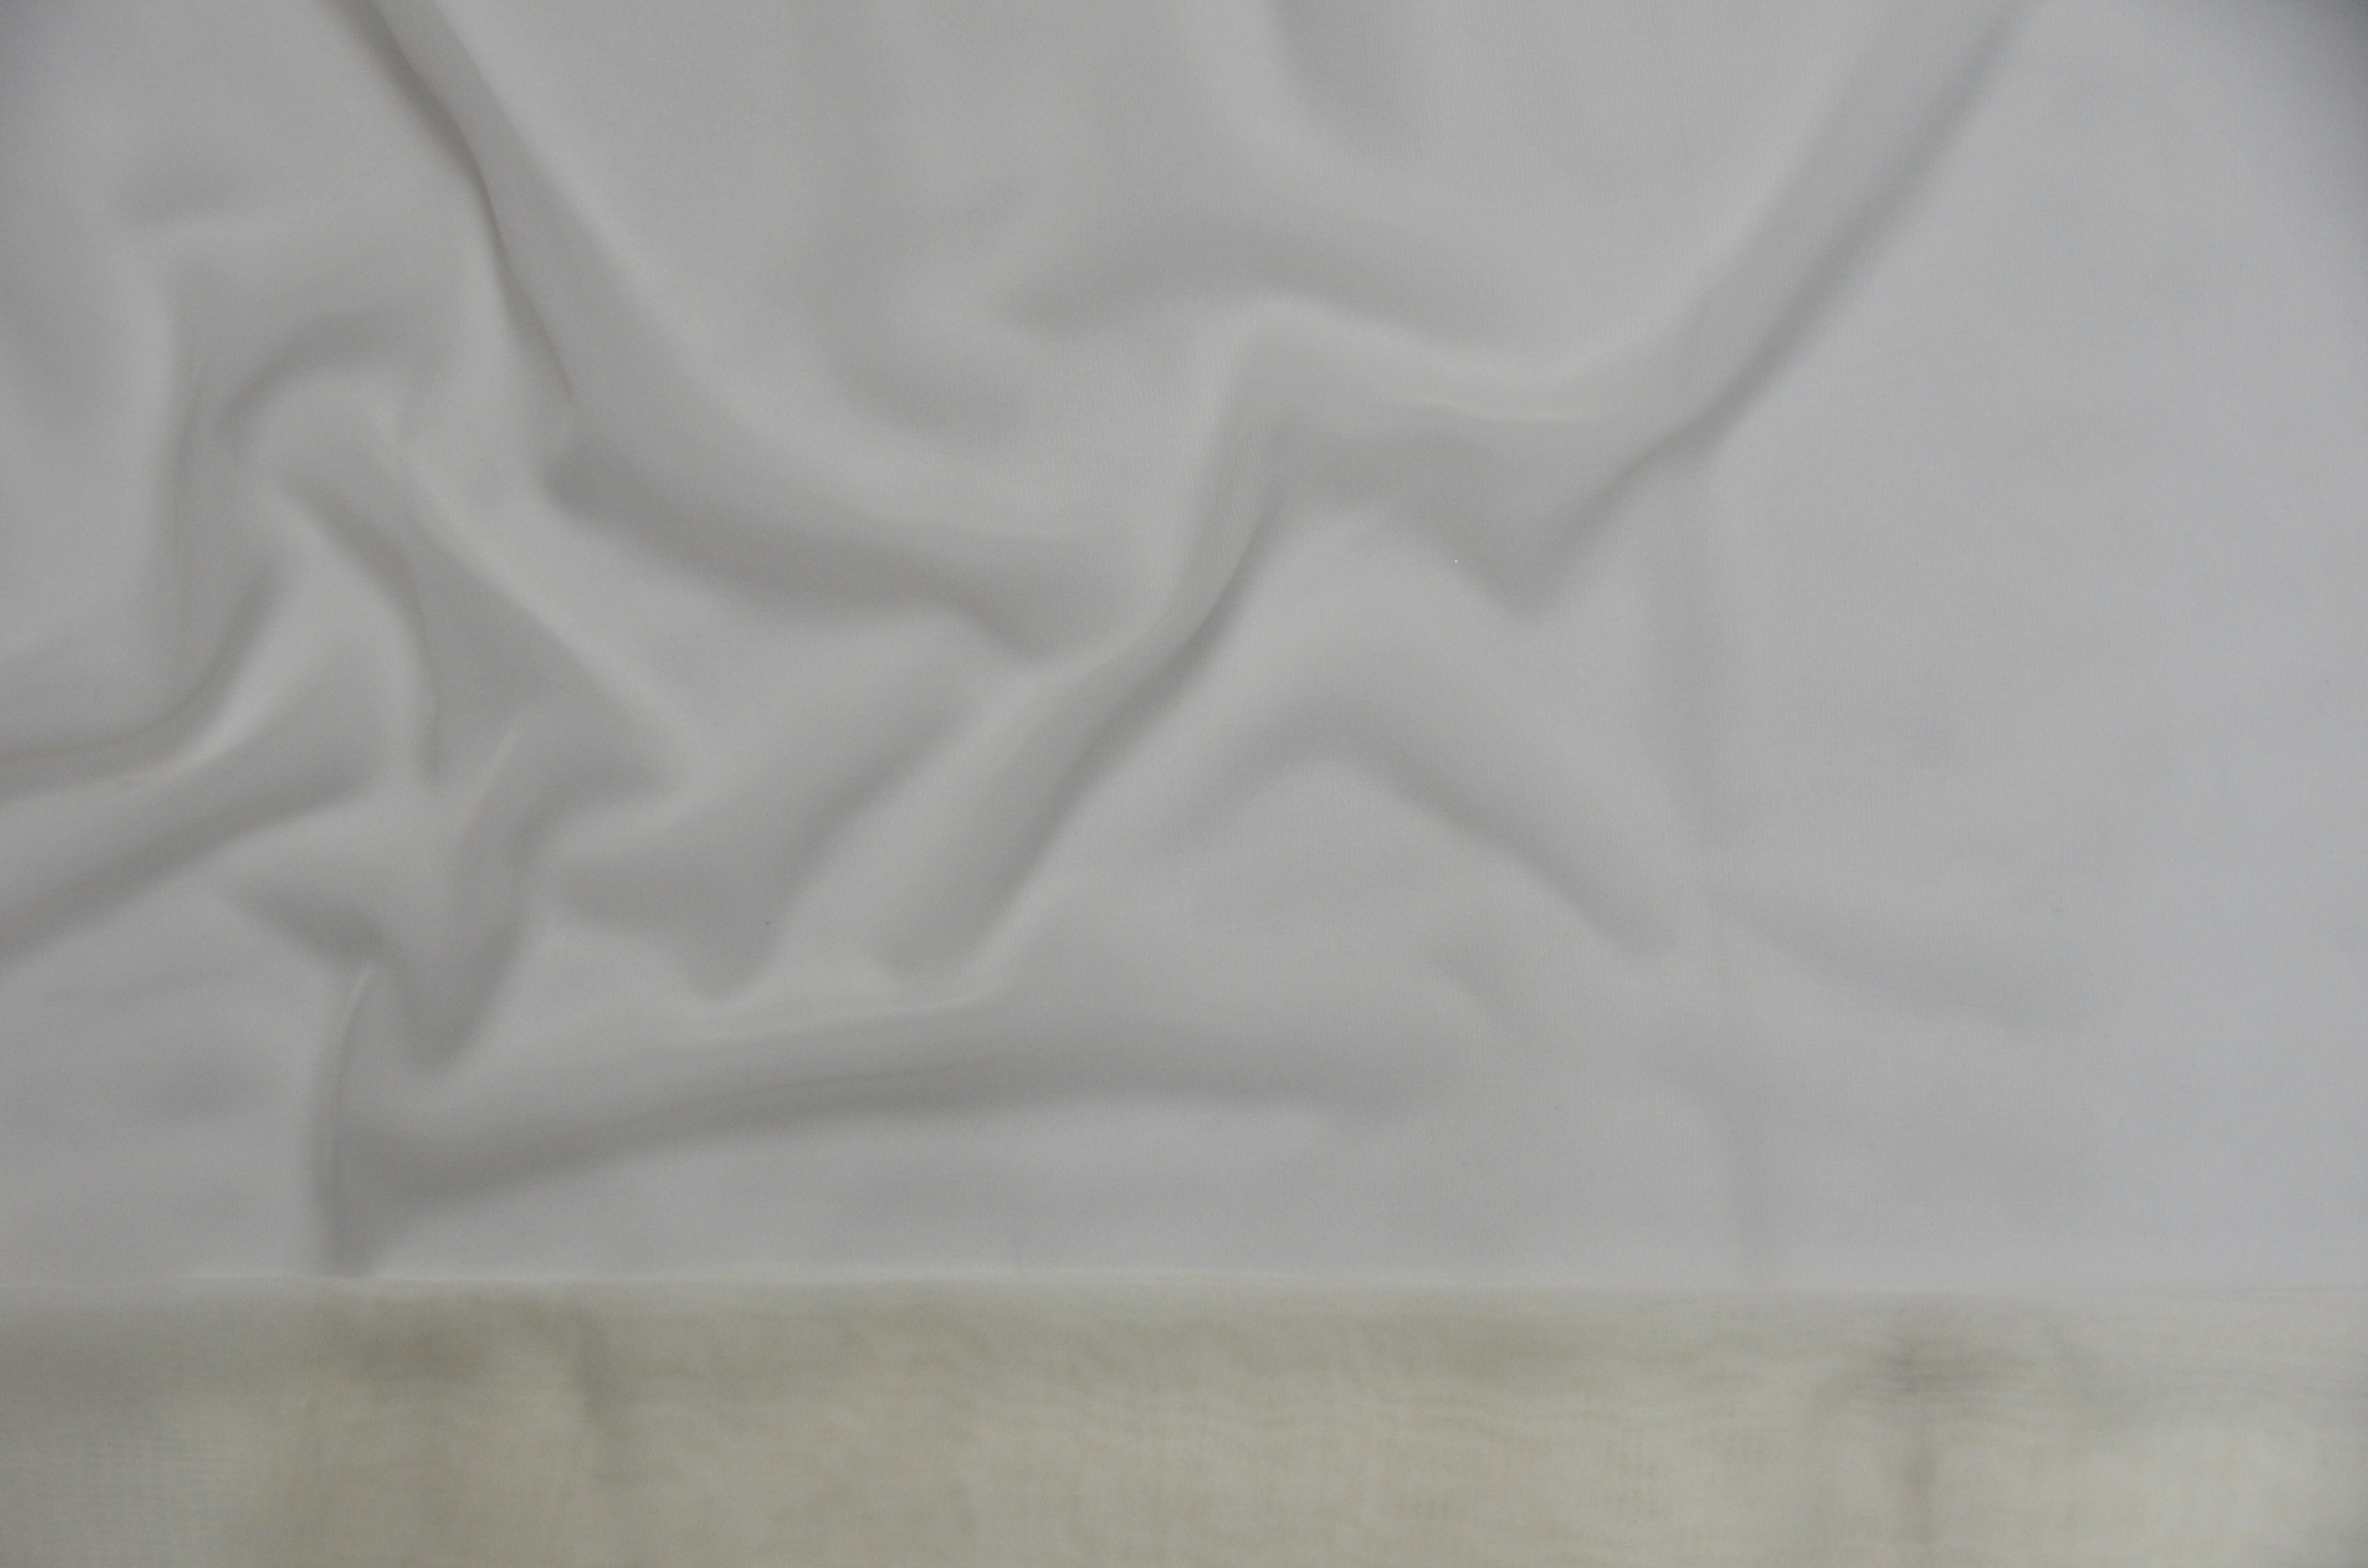 Chiffon Fabric | Super Soft & Flowy | 60" Wide | Sample Swatch | Fabric mytextilefabric Sample Swatches 127 Off White 